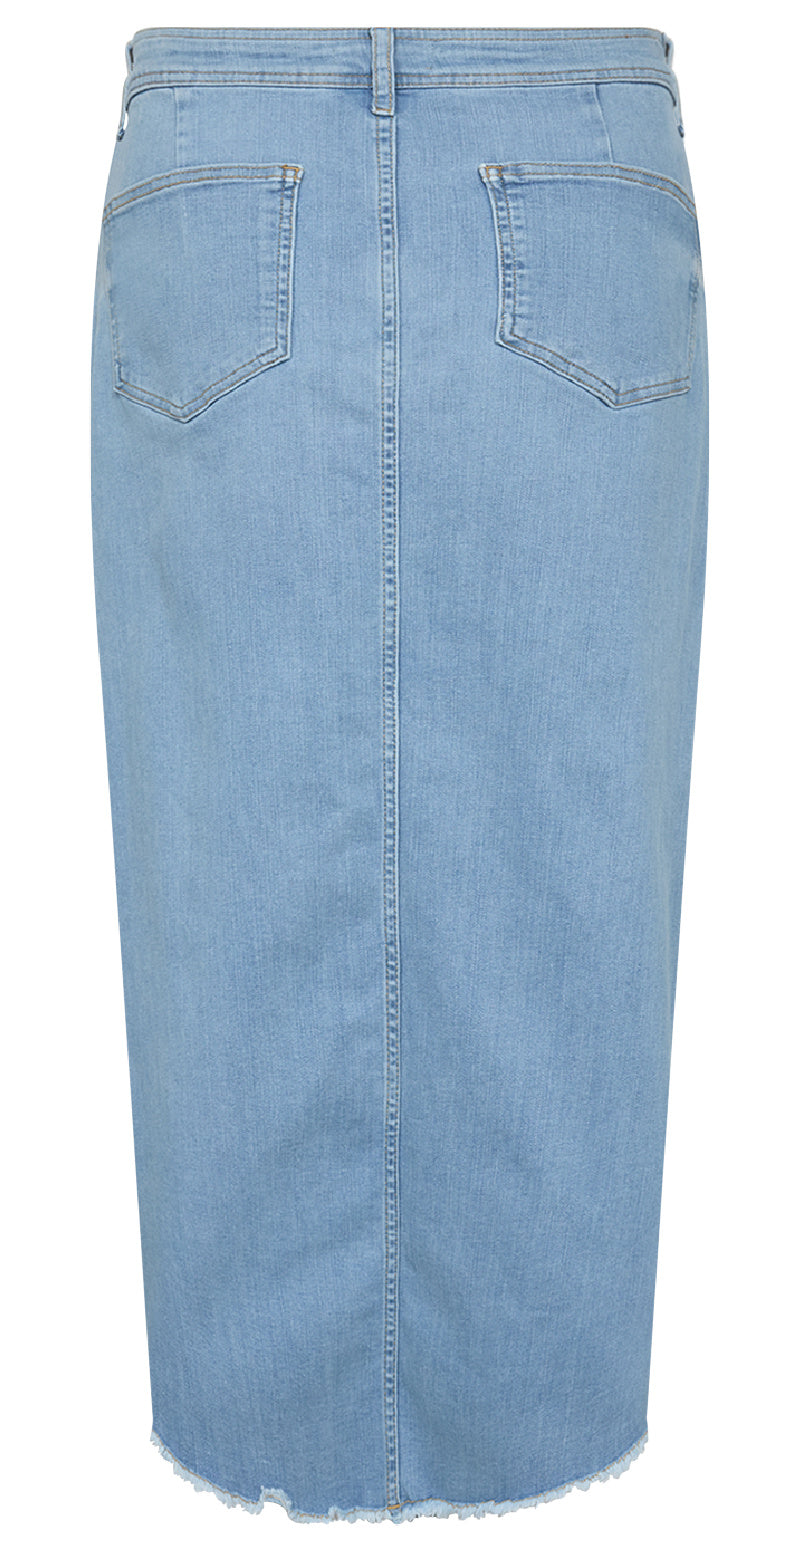 Lysblå denim nederdel med høj talje og slids foran - bagfra